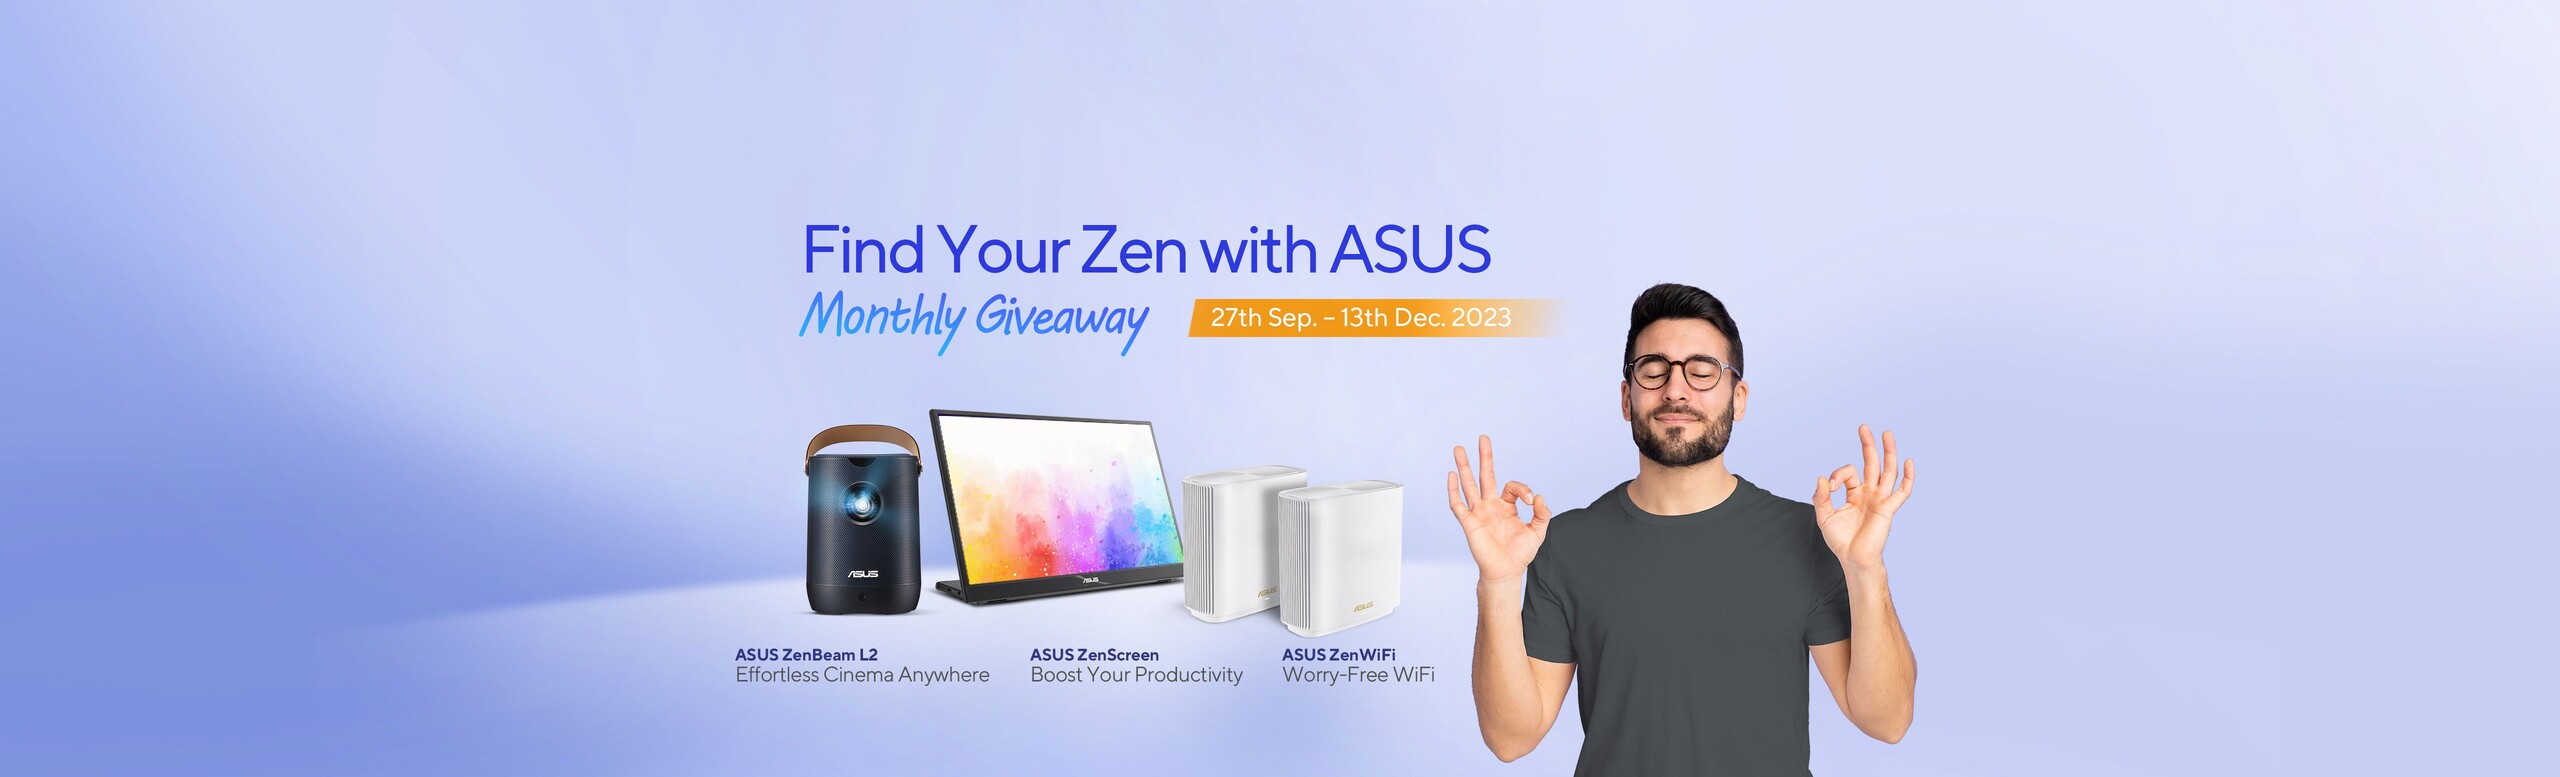 Find Your Zen with ASUS Monthly Giveaway September 27-December 13, 2023 Image of ASUS ZenBeam L2, ASUS Zen Screen, ASUS Zen WiFi